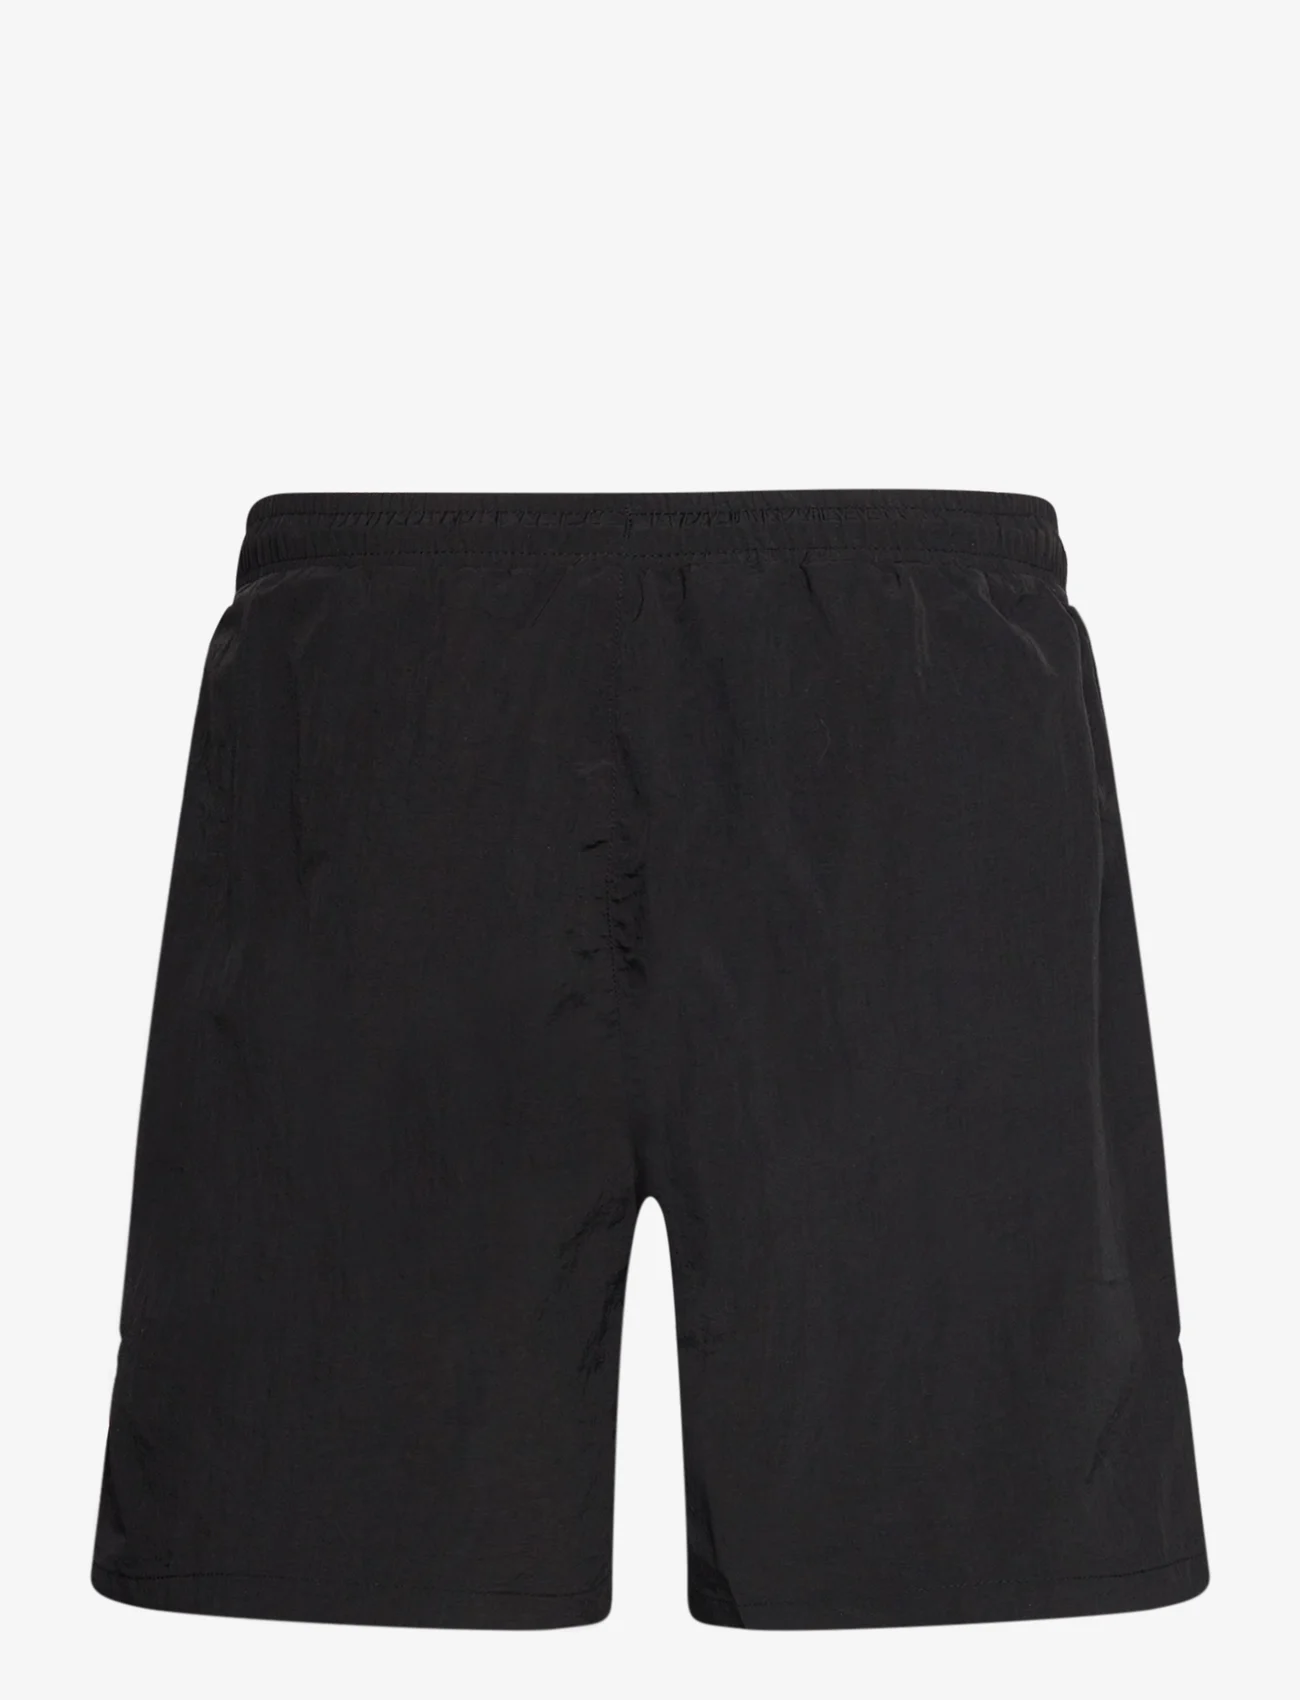 FILA - SWASILAND beach shorts - die niedrigsten preise - black - 1